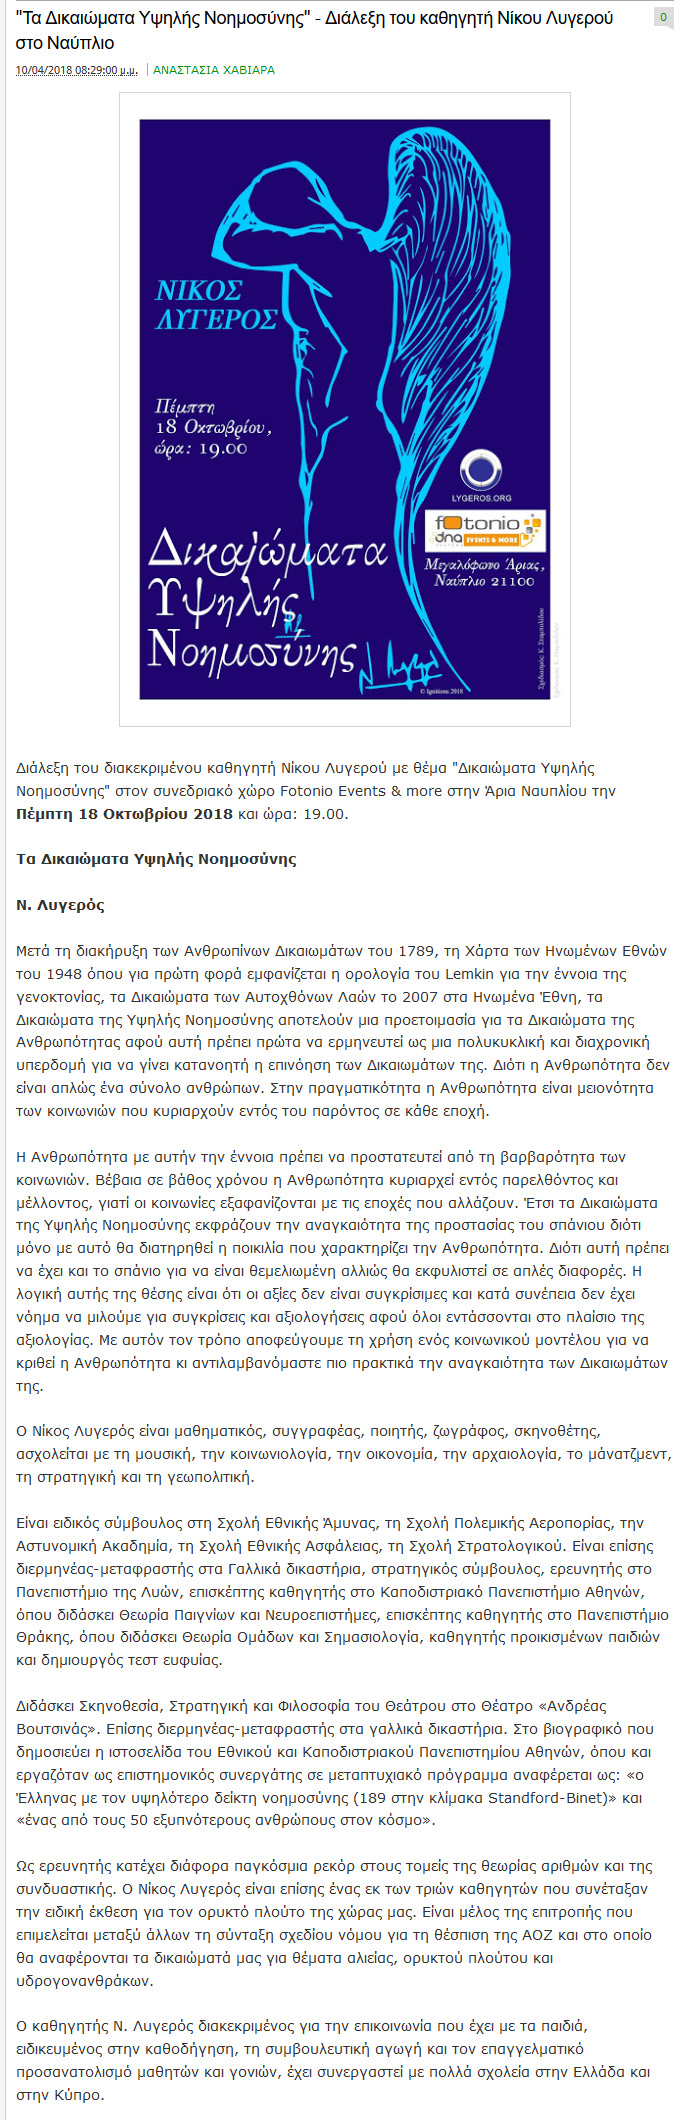 Τα Δικαιώματα Υψηλής Νοημοσύνης - Διάλεξη του καθηγητή Νίκου Λυγερού στο Ναύπλιο, parapolitikaargolida, 04/10/2018 - Publication